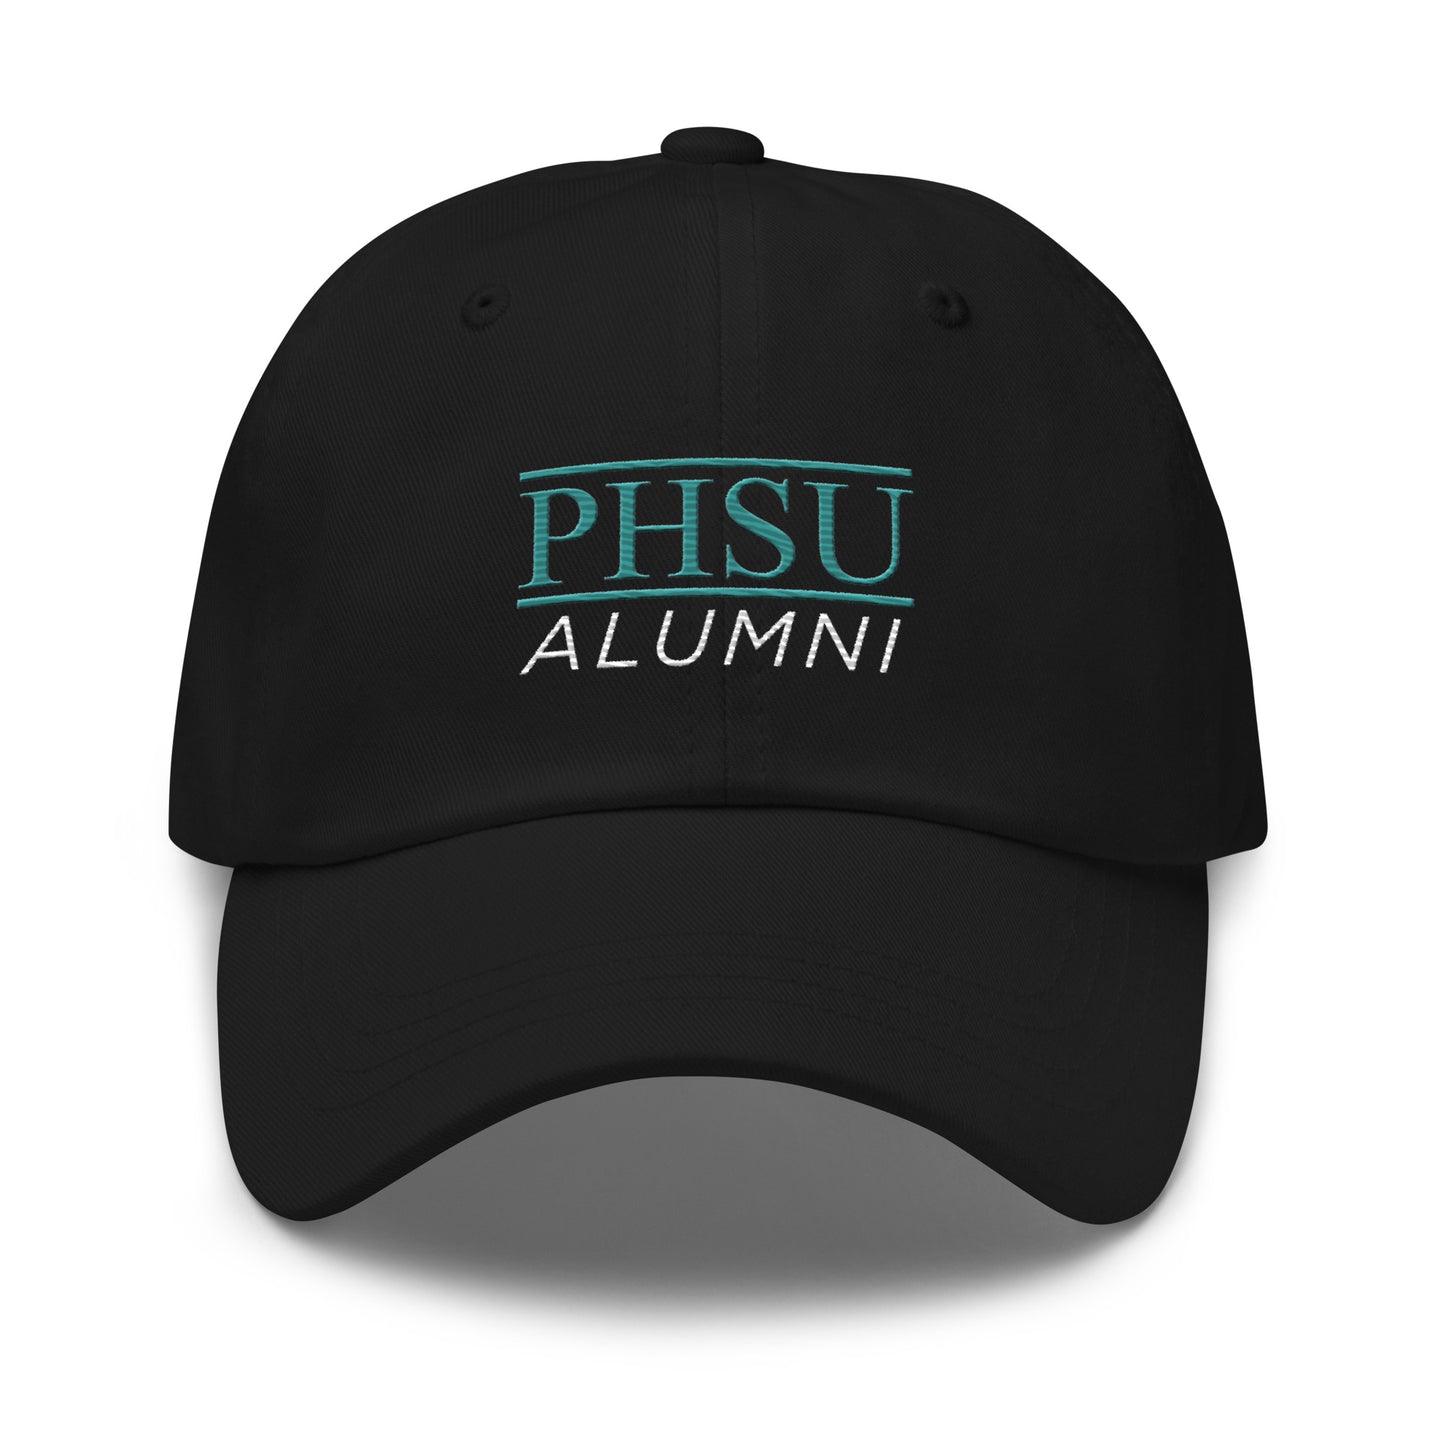 PHSU Alumni - Cap